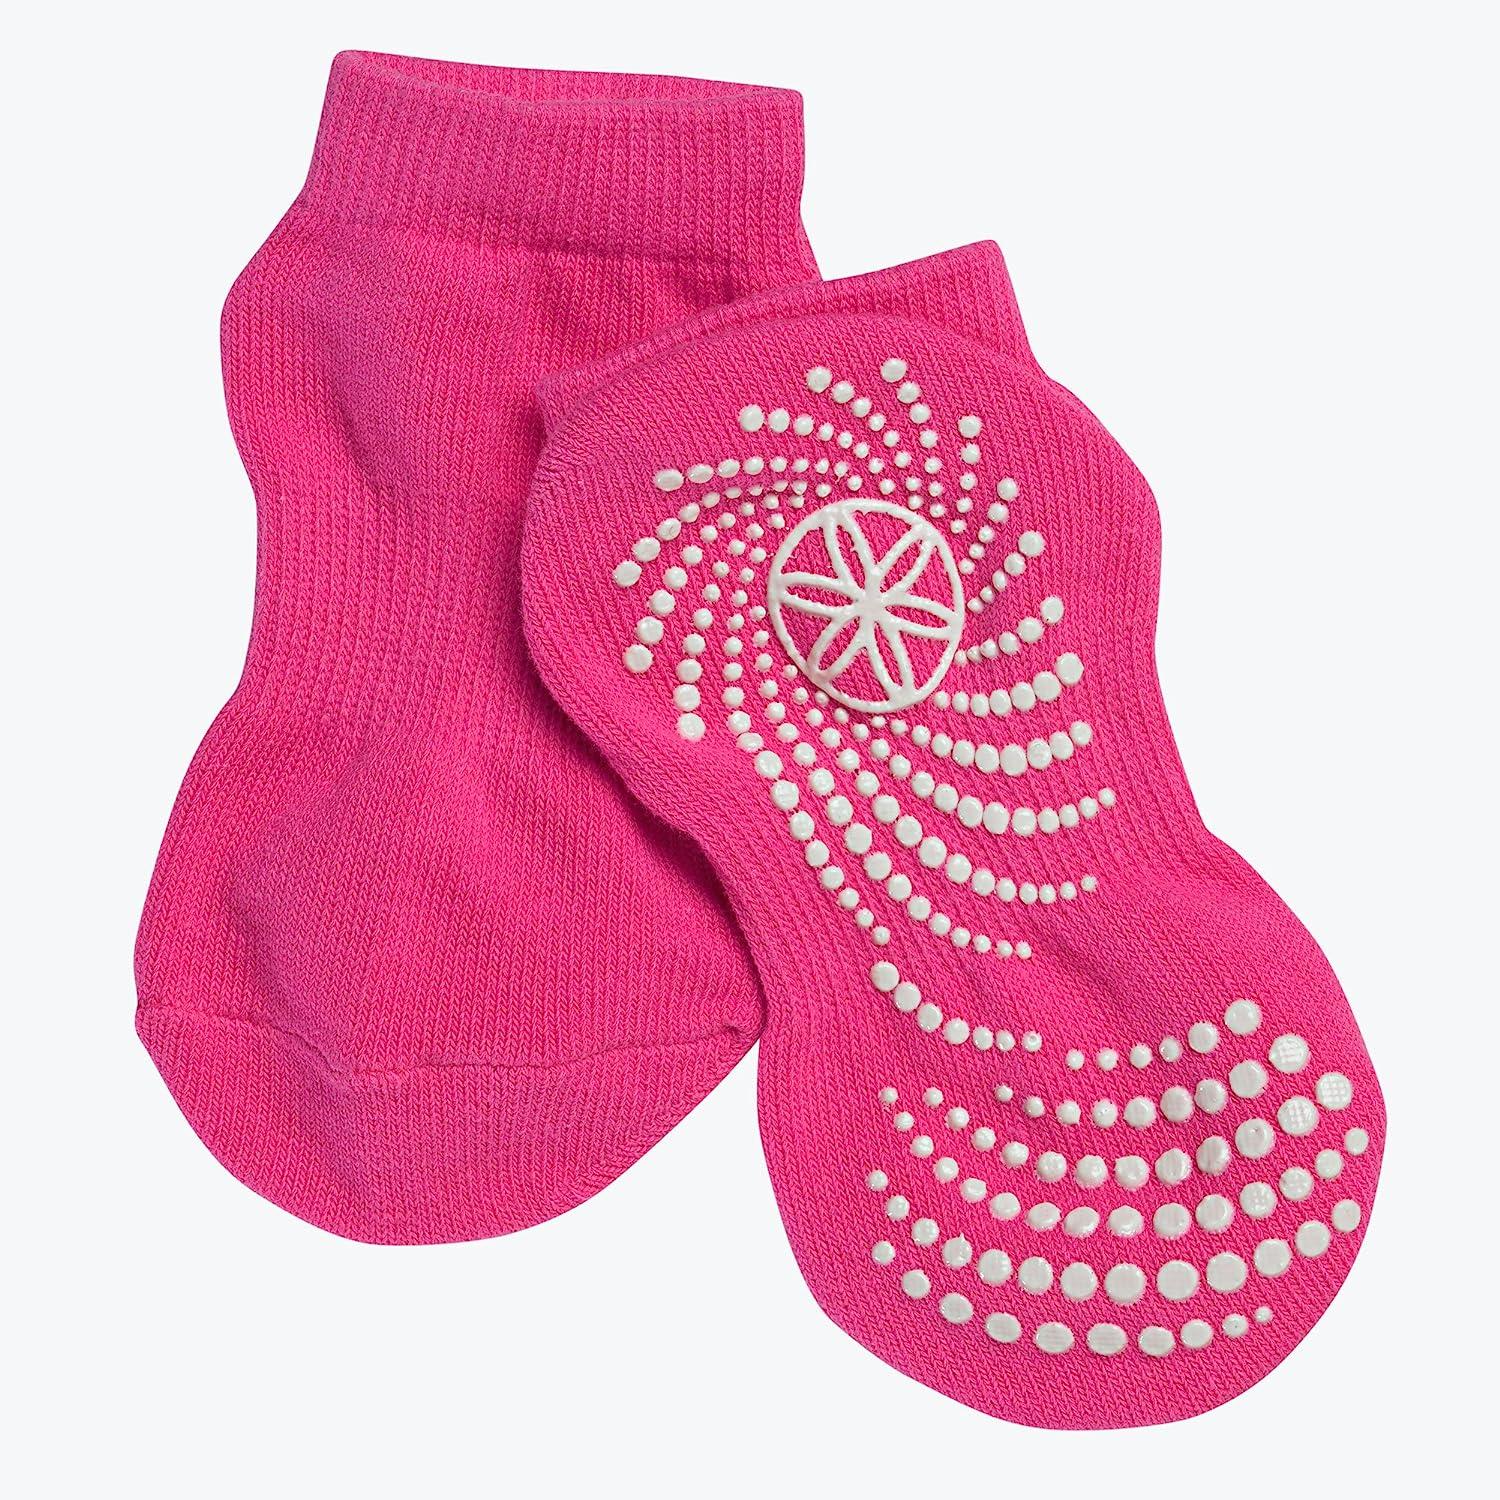 Gaiam Kids Yoga Socks (Pack of 2) Pink/Purple